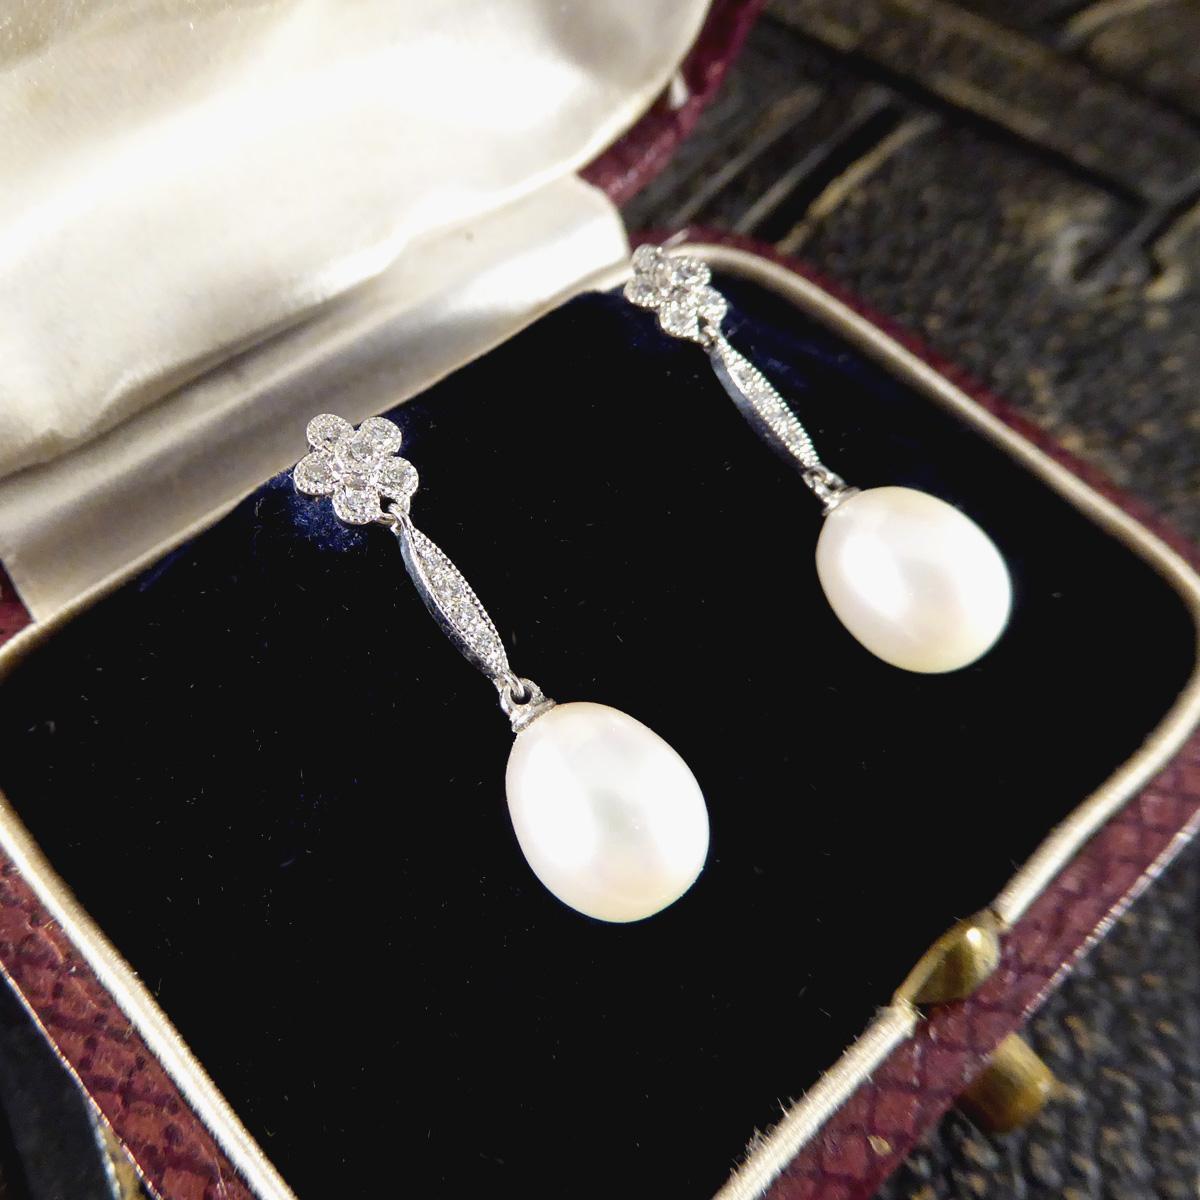 Brilliant Cut Art Deco Replica Daisy Cluster Diamond Pearl Drop Earrings in 18ct White Gold